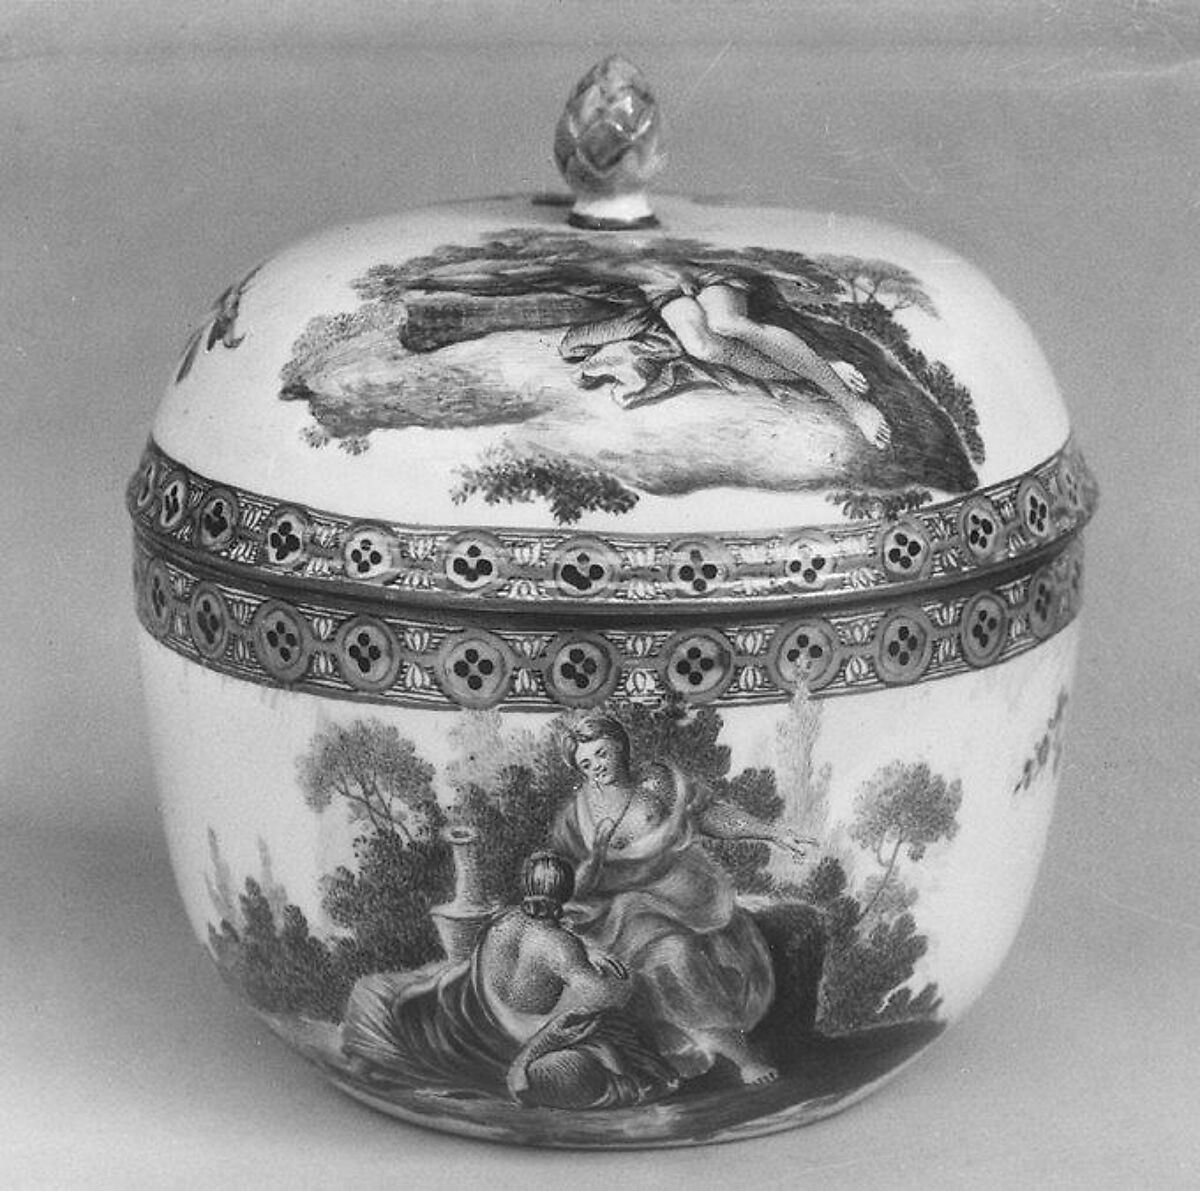 Sugar bowl with cover, Frankenthal Porcelain Manufactory (German), Hard-paste porcelain, German, Frankenthal 